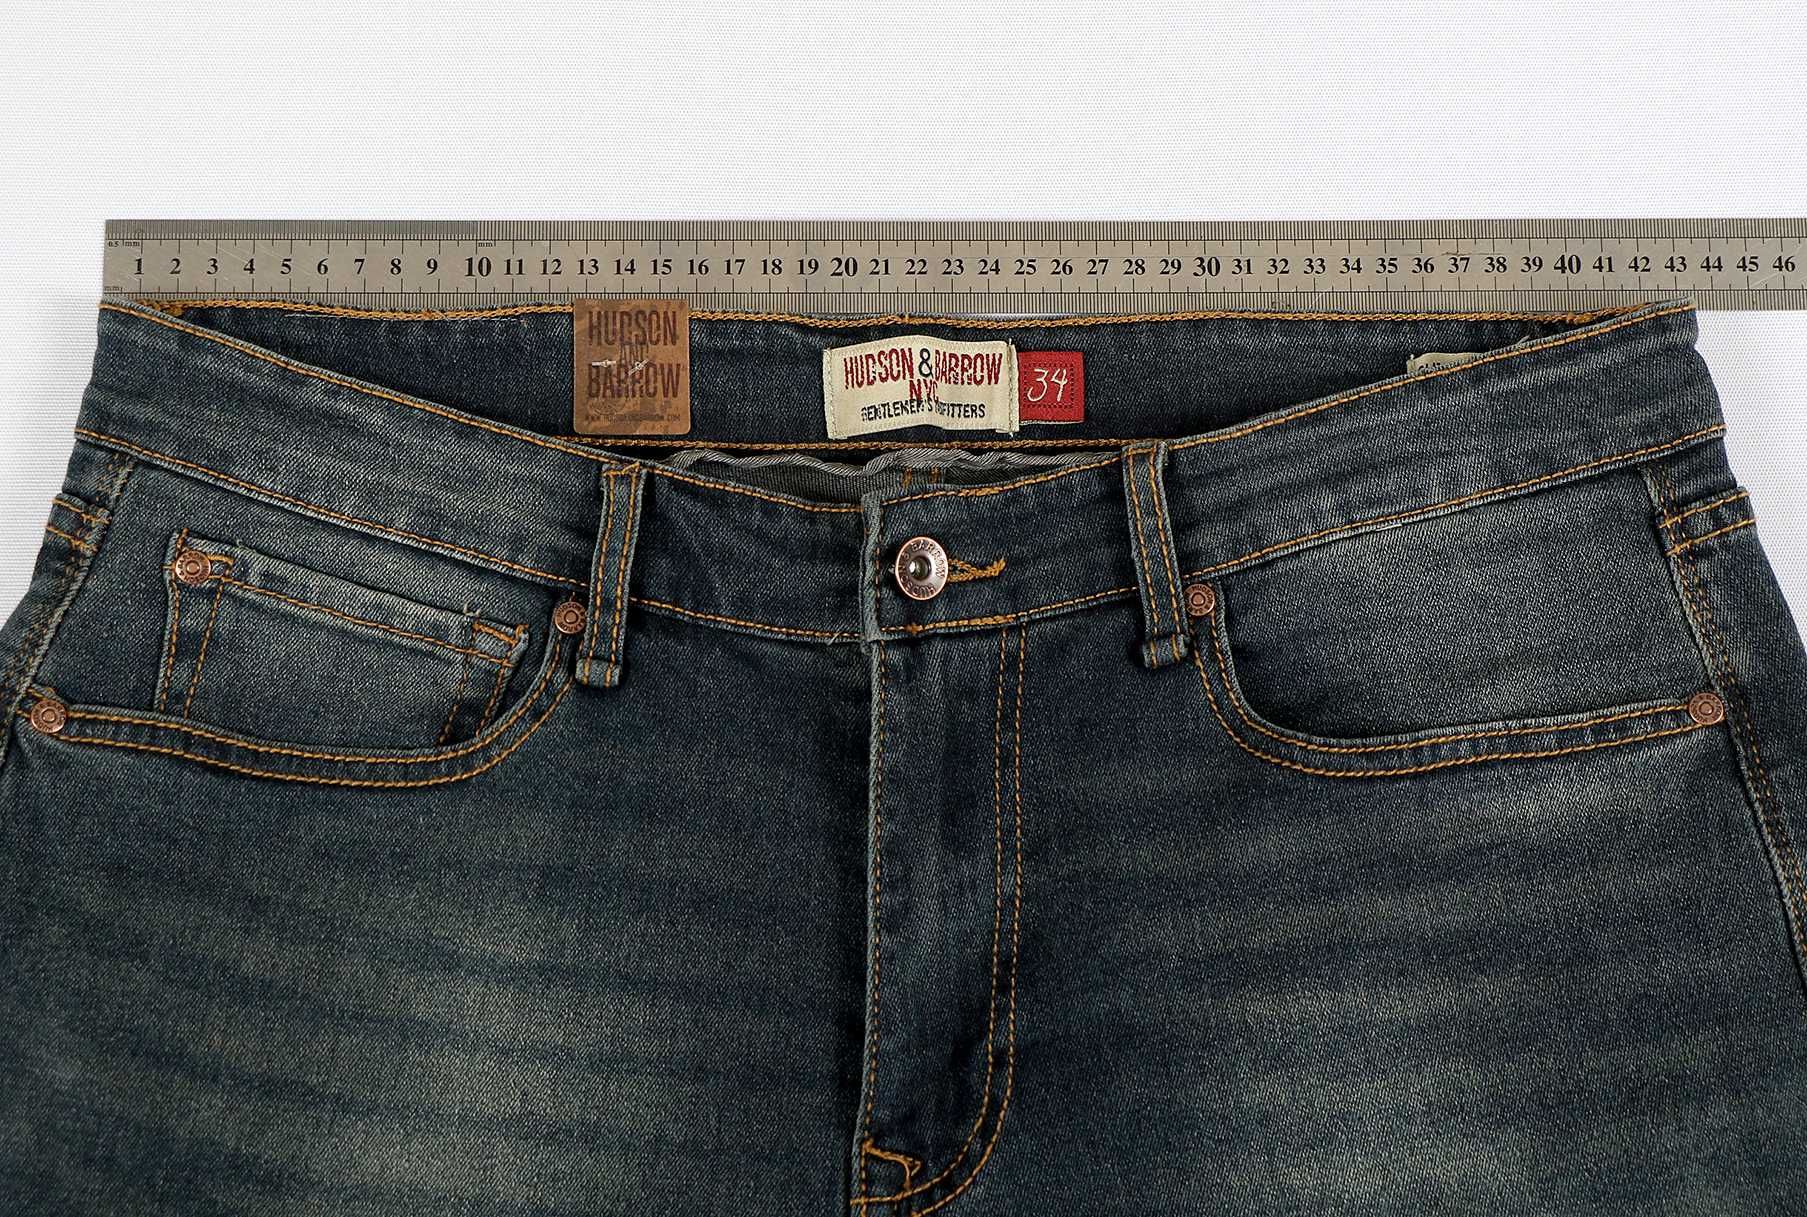 Чоловічі джинси HUDSON & BARROW р.34 / мужские джинсы США